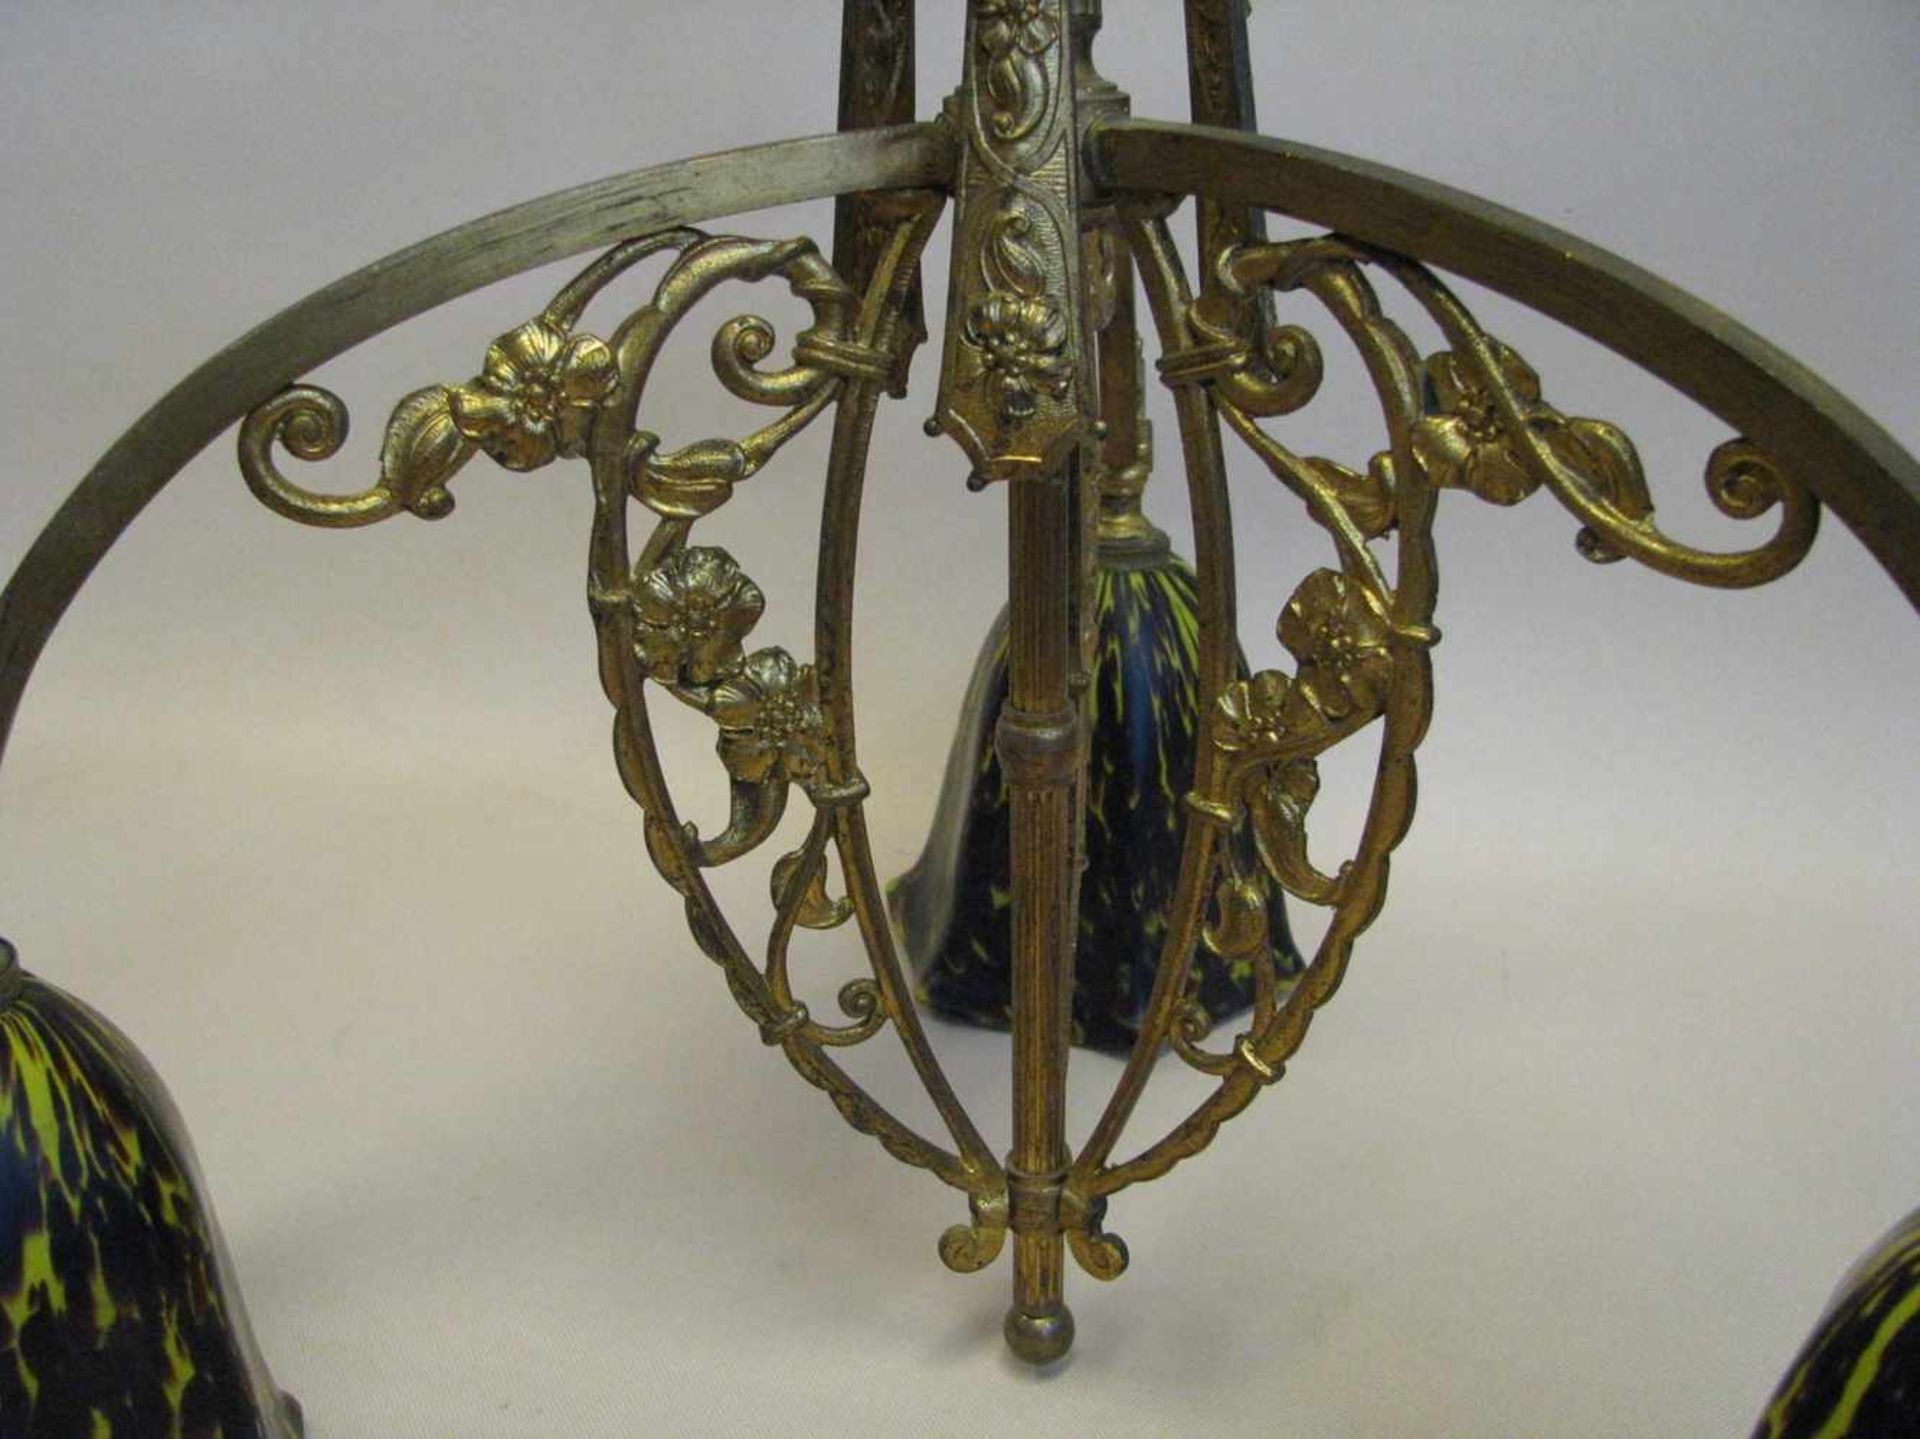 Hängelampe, Jugendstil, um 1900, Bronze vergoldet, 3 farbige Glasschirme, h 45 cm, d 47 cm.- - -19. - Image 2 of 2